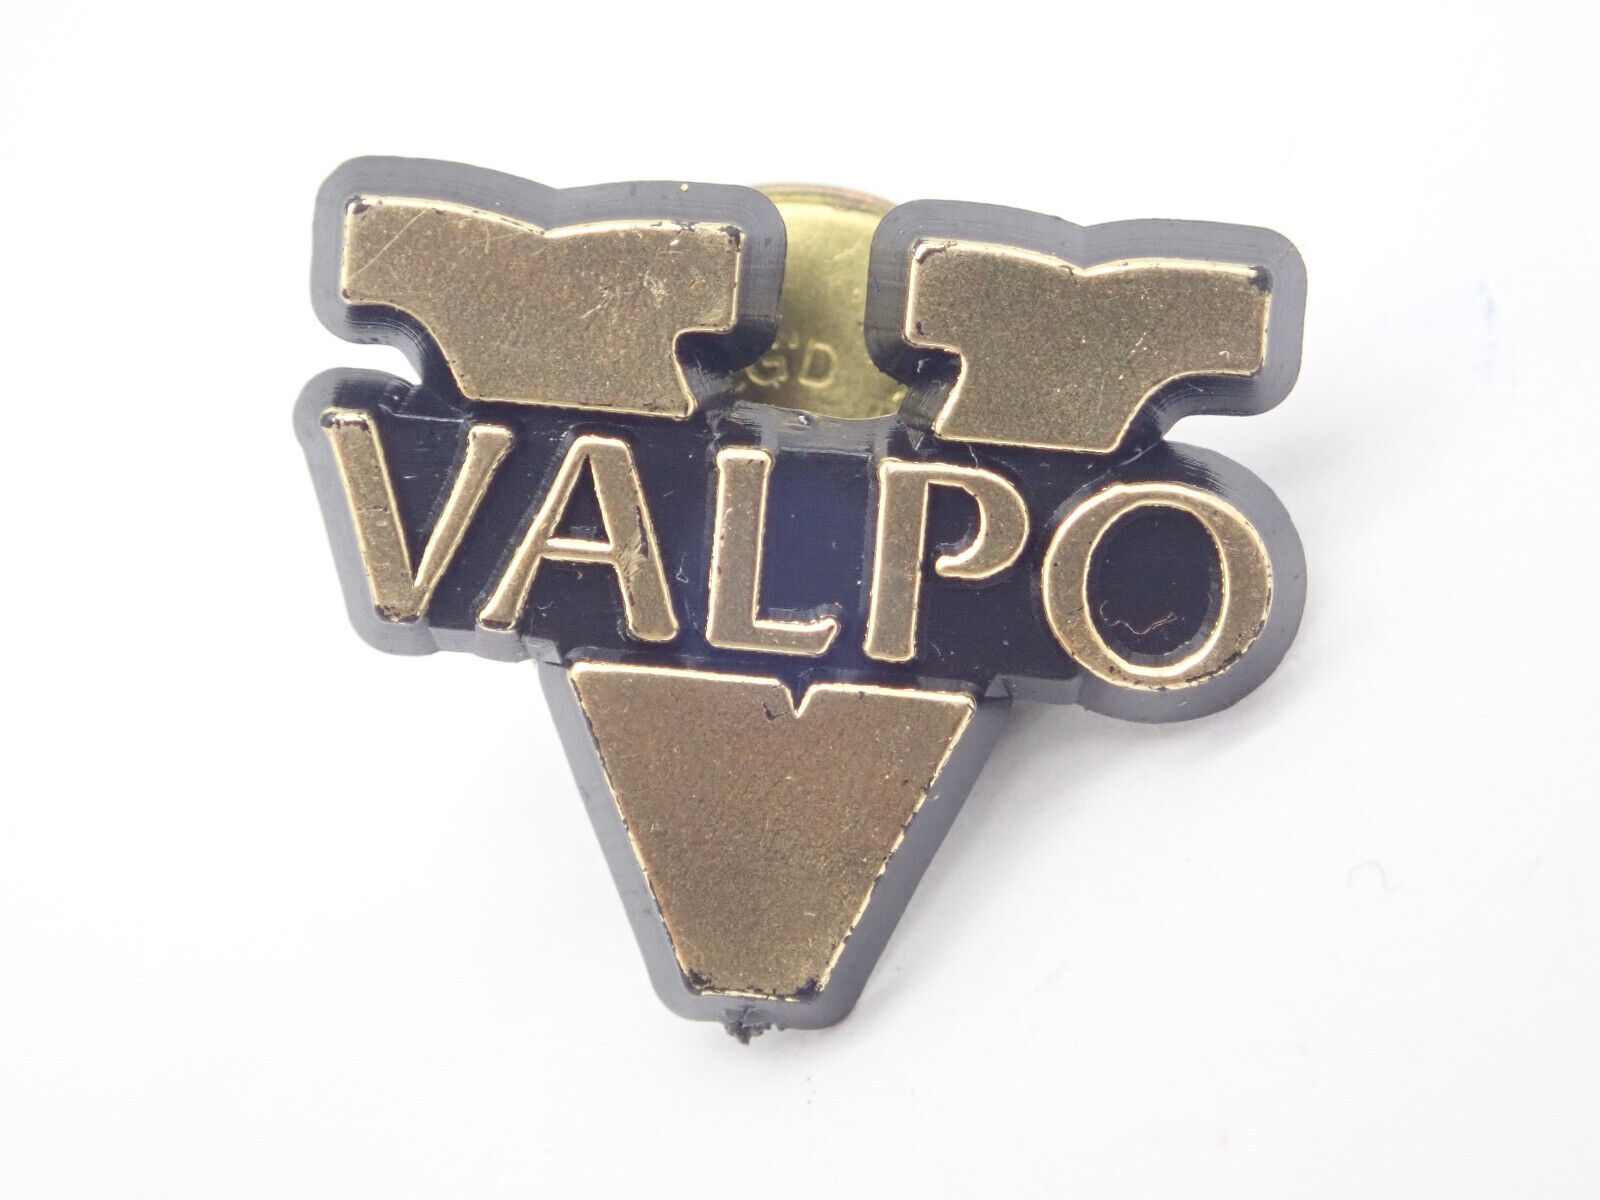 Valpo V Vintage Lapel Pin